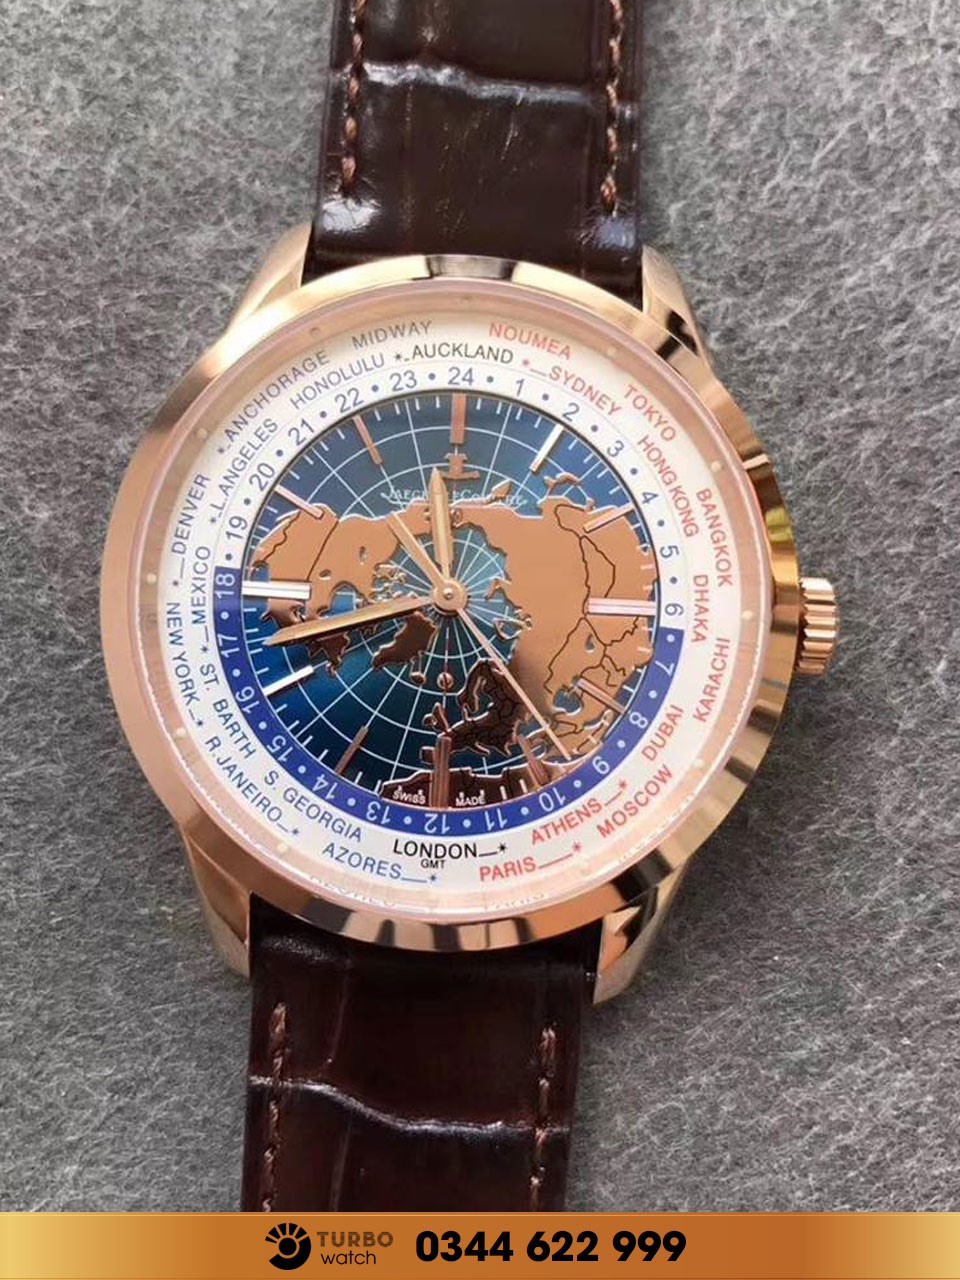 Mua đồng hồ Jaeger Lecoultre Super Fake tại thành phố Hồ Chí Minh ở đâu tốt nhất